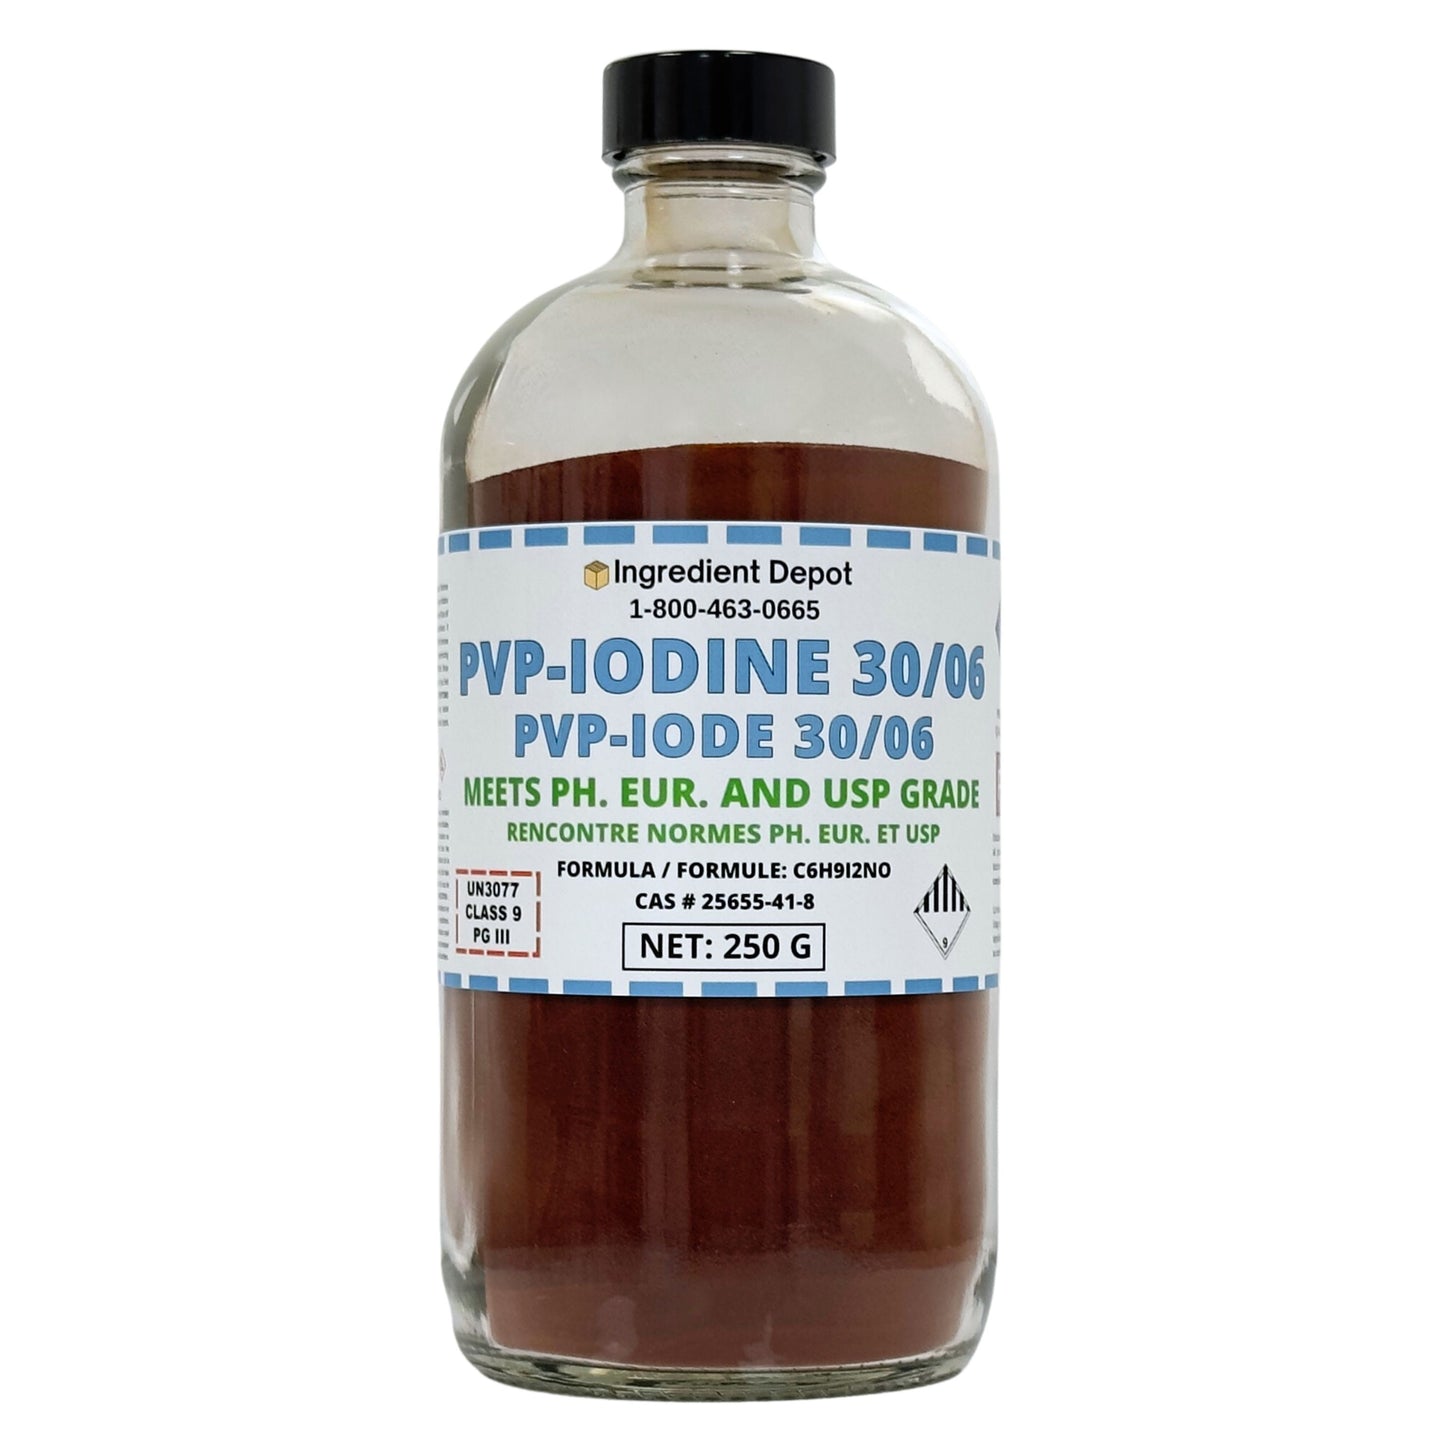 PVP-Iodine 30/06 (PVP-I, Povidone-Iodine)